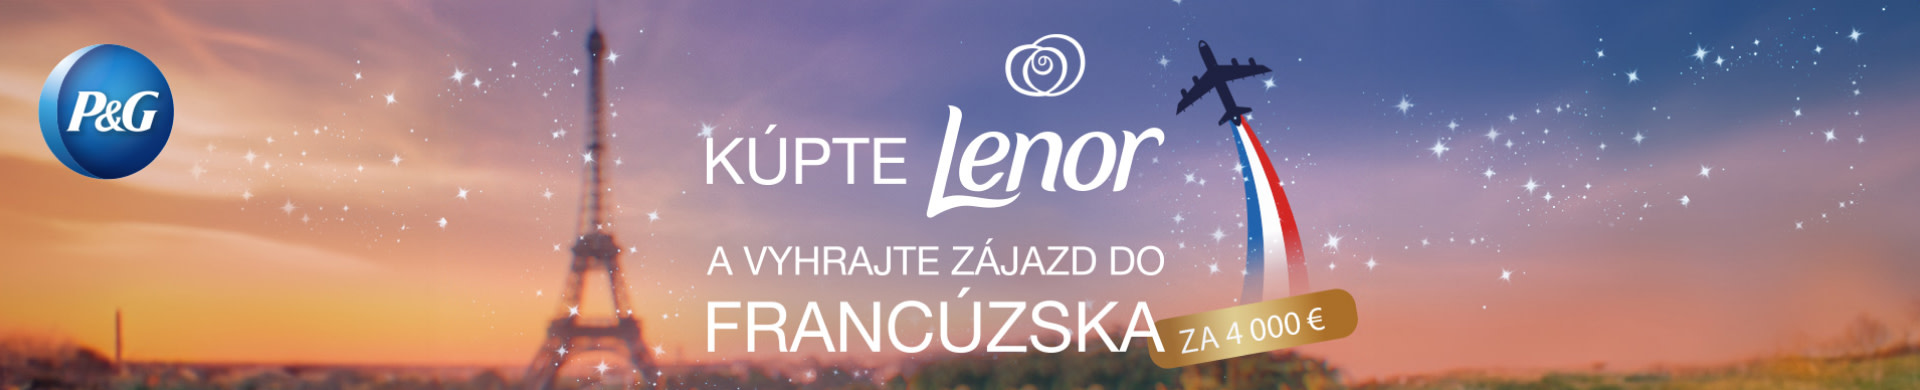 Kúpte Lenor a vyhrajte zájazd do Francúzska!